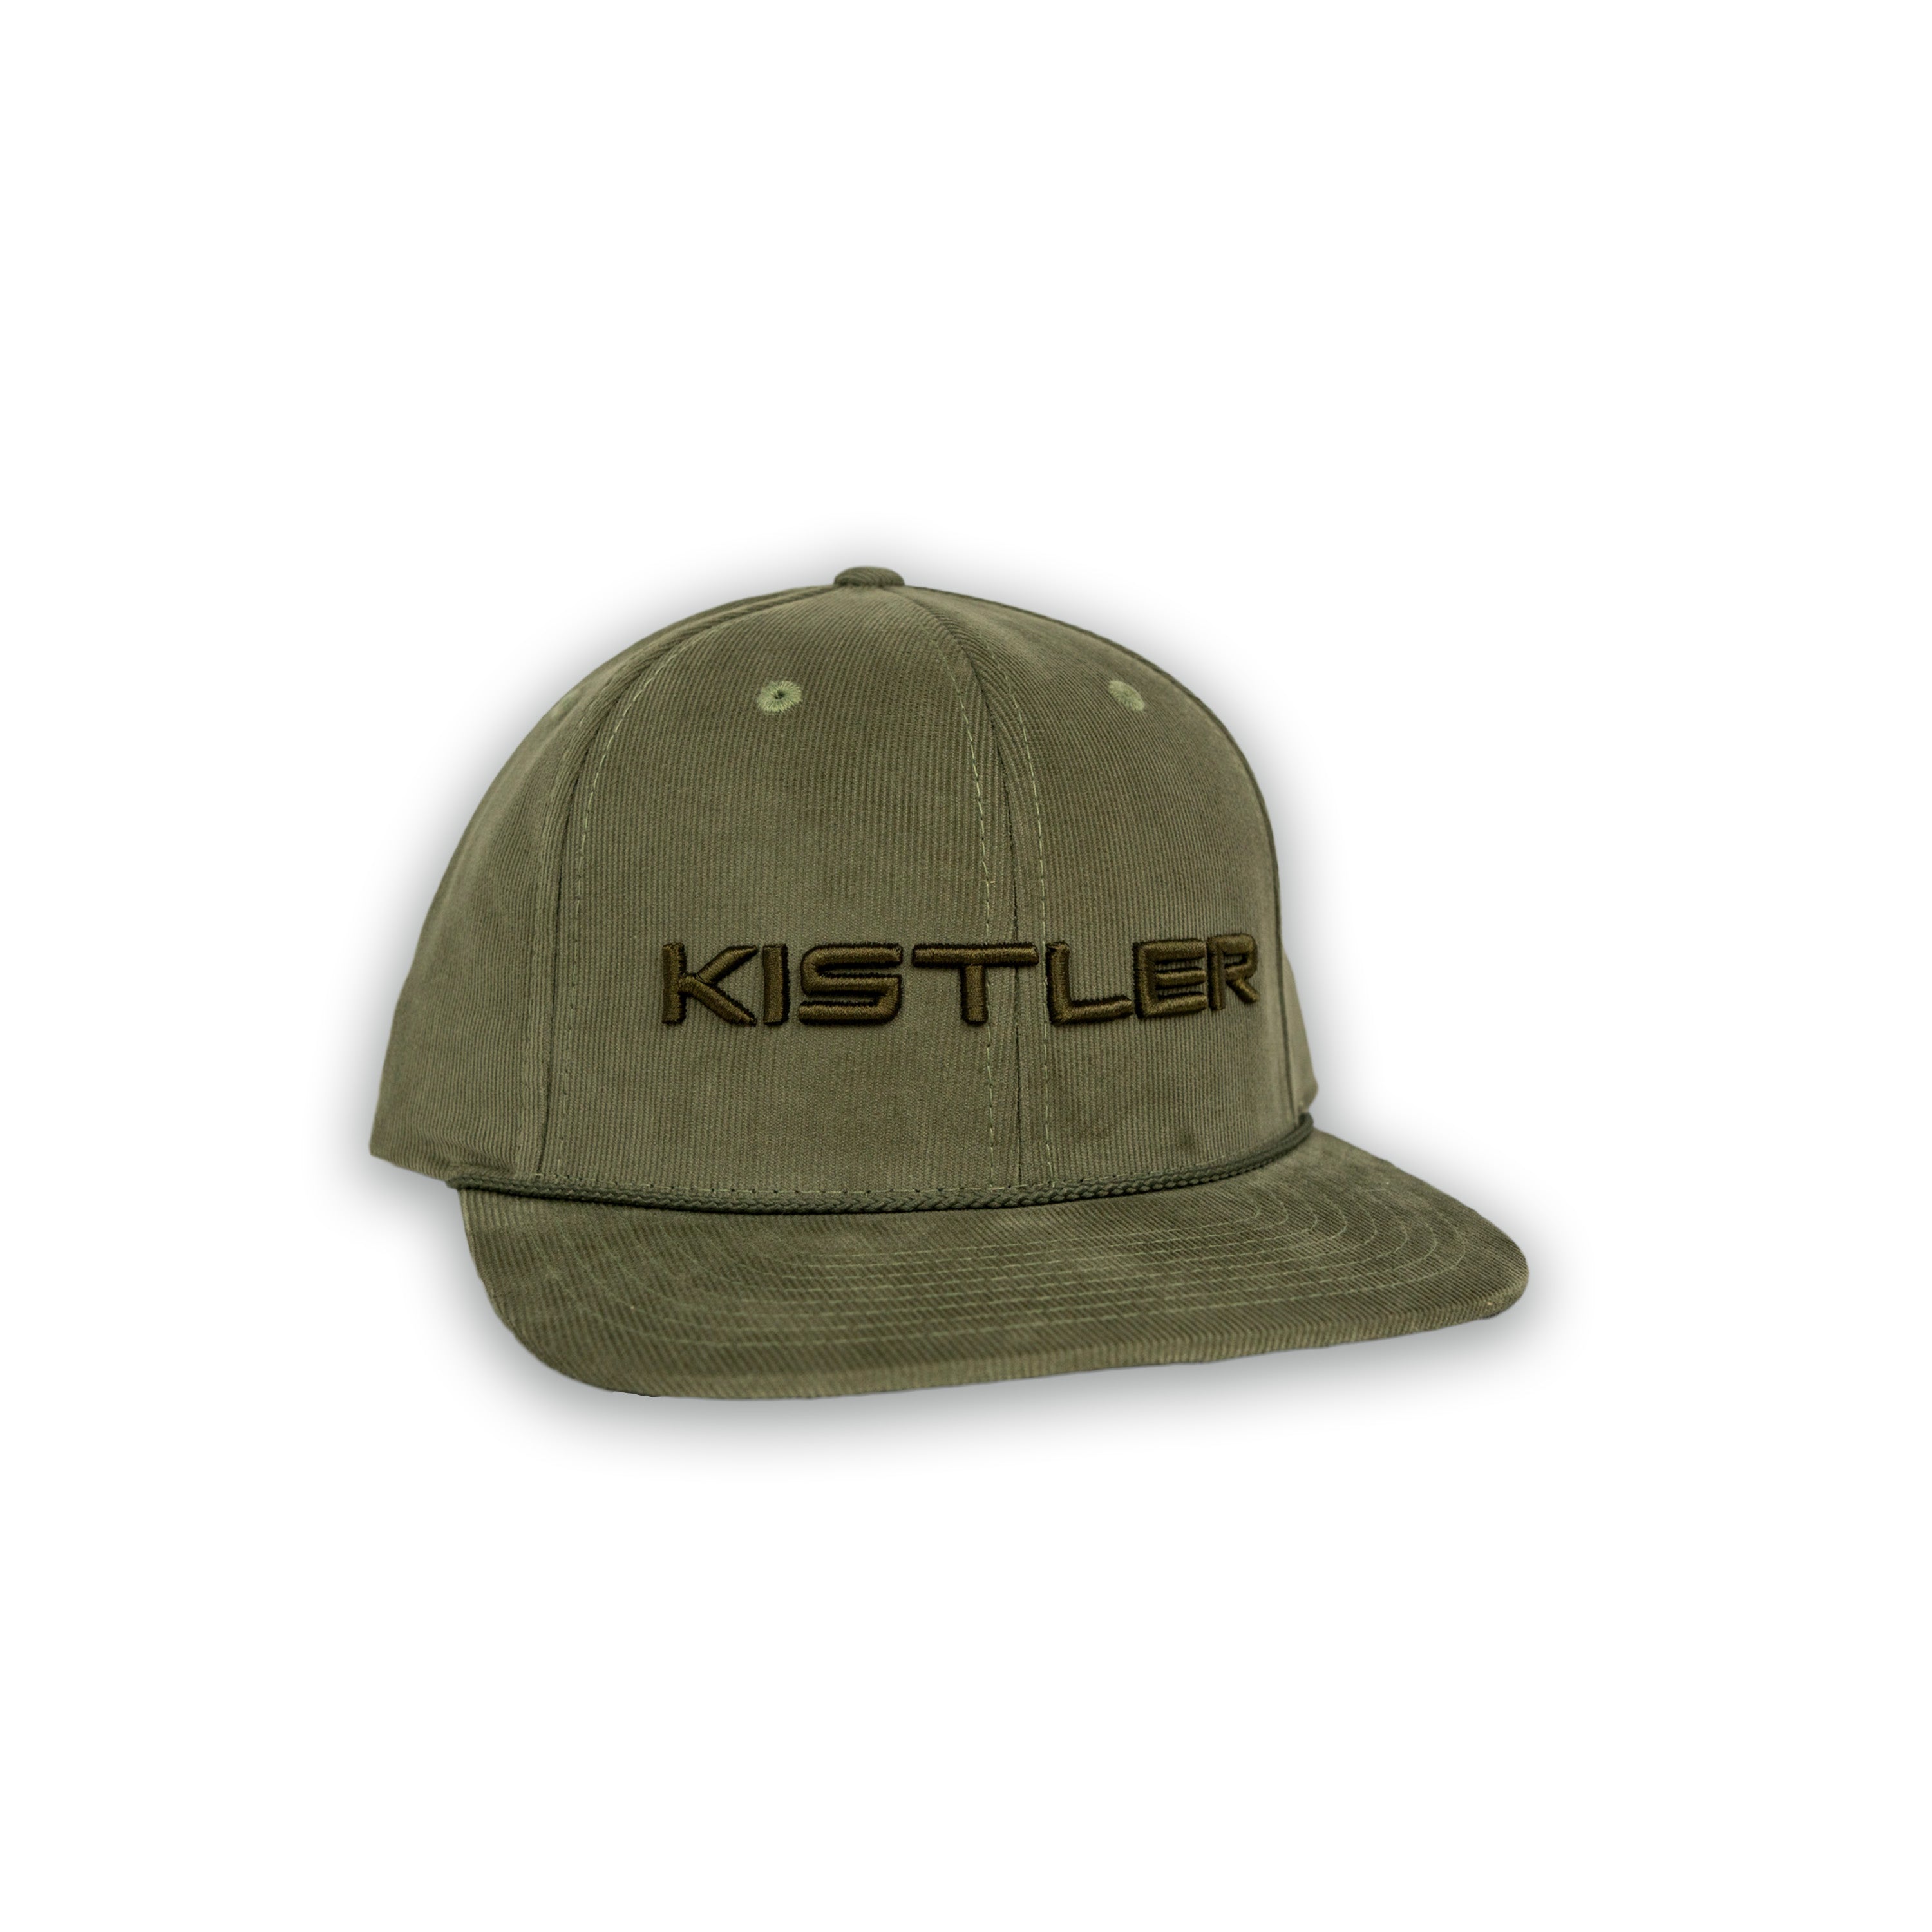 Kistler Cap Structured Teal/White Mesh